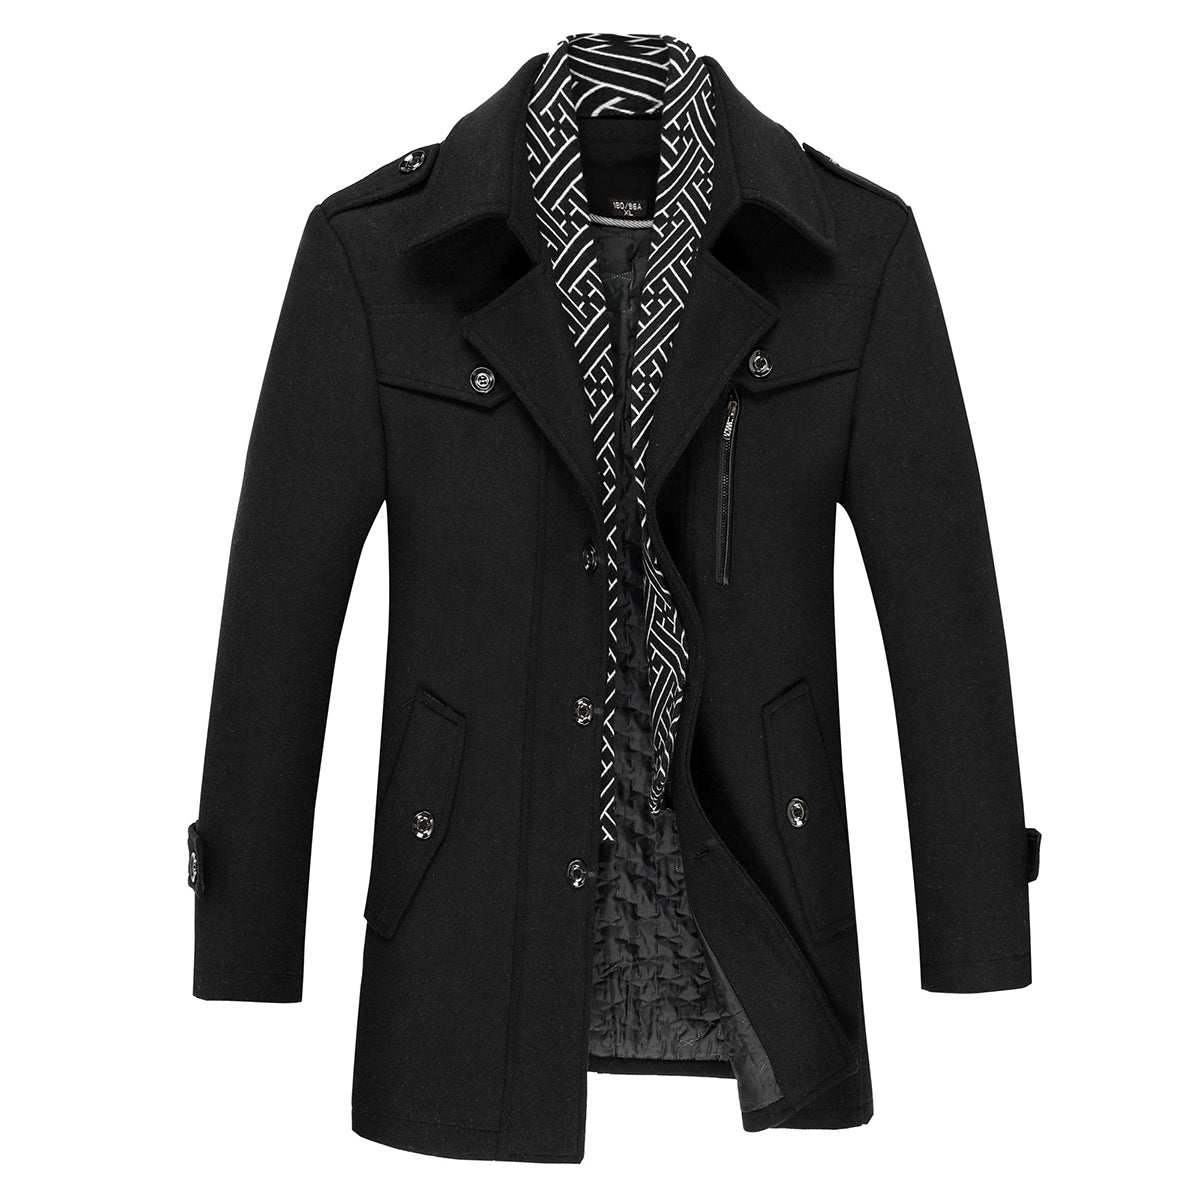 Men's Thick Solid Color Lapel Casual Coat Cotton Black